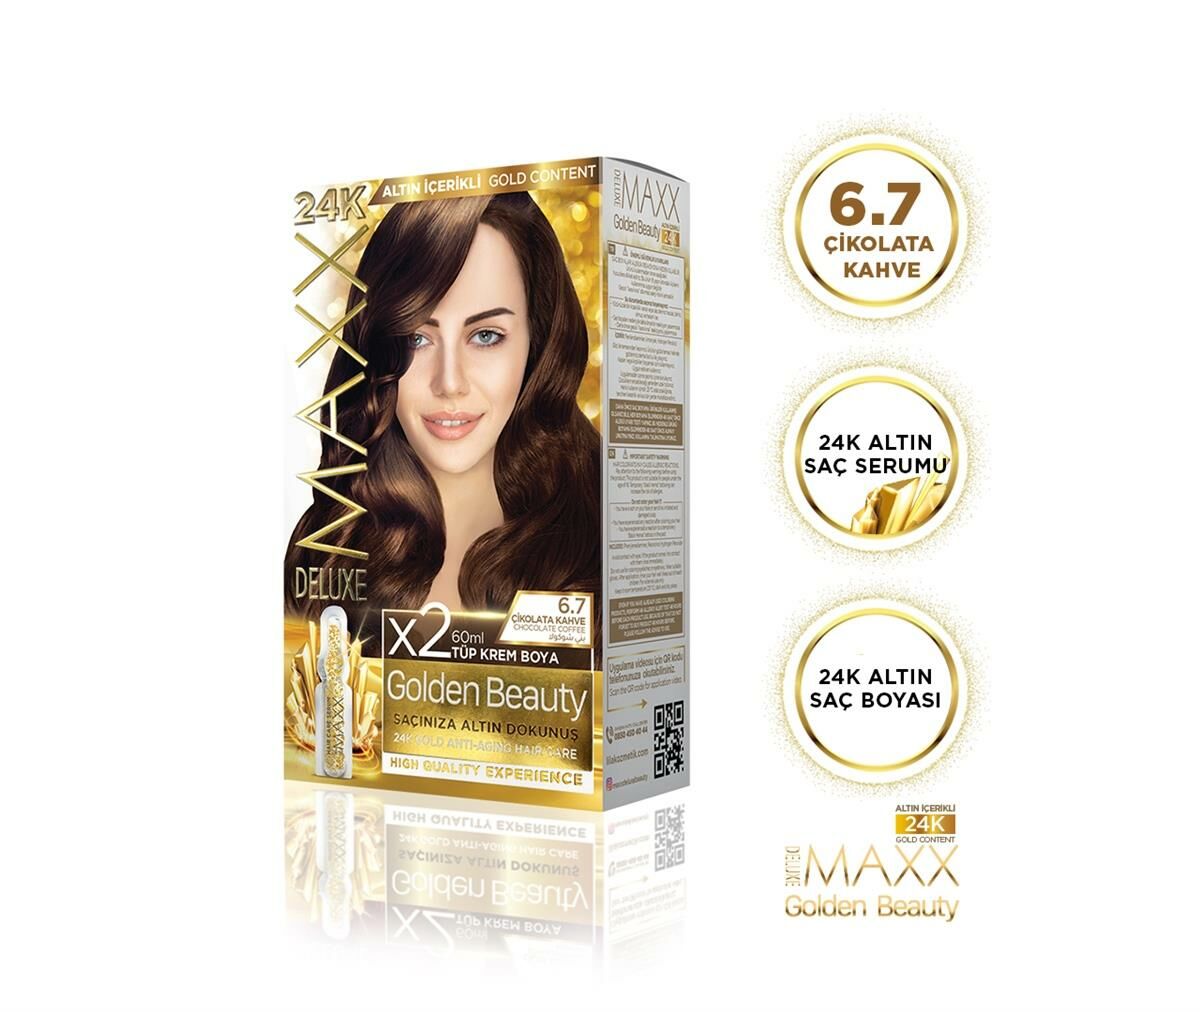 MAXX DELUXE Golden 24K Altın Içerikli Saç Boyası 6.7 Çikolata Kahve 2 Boyama